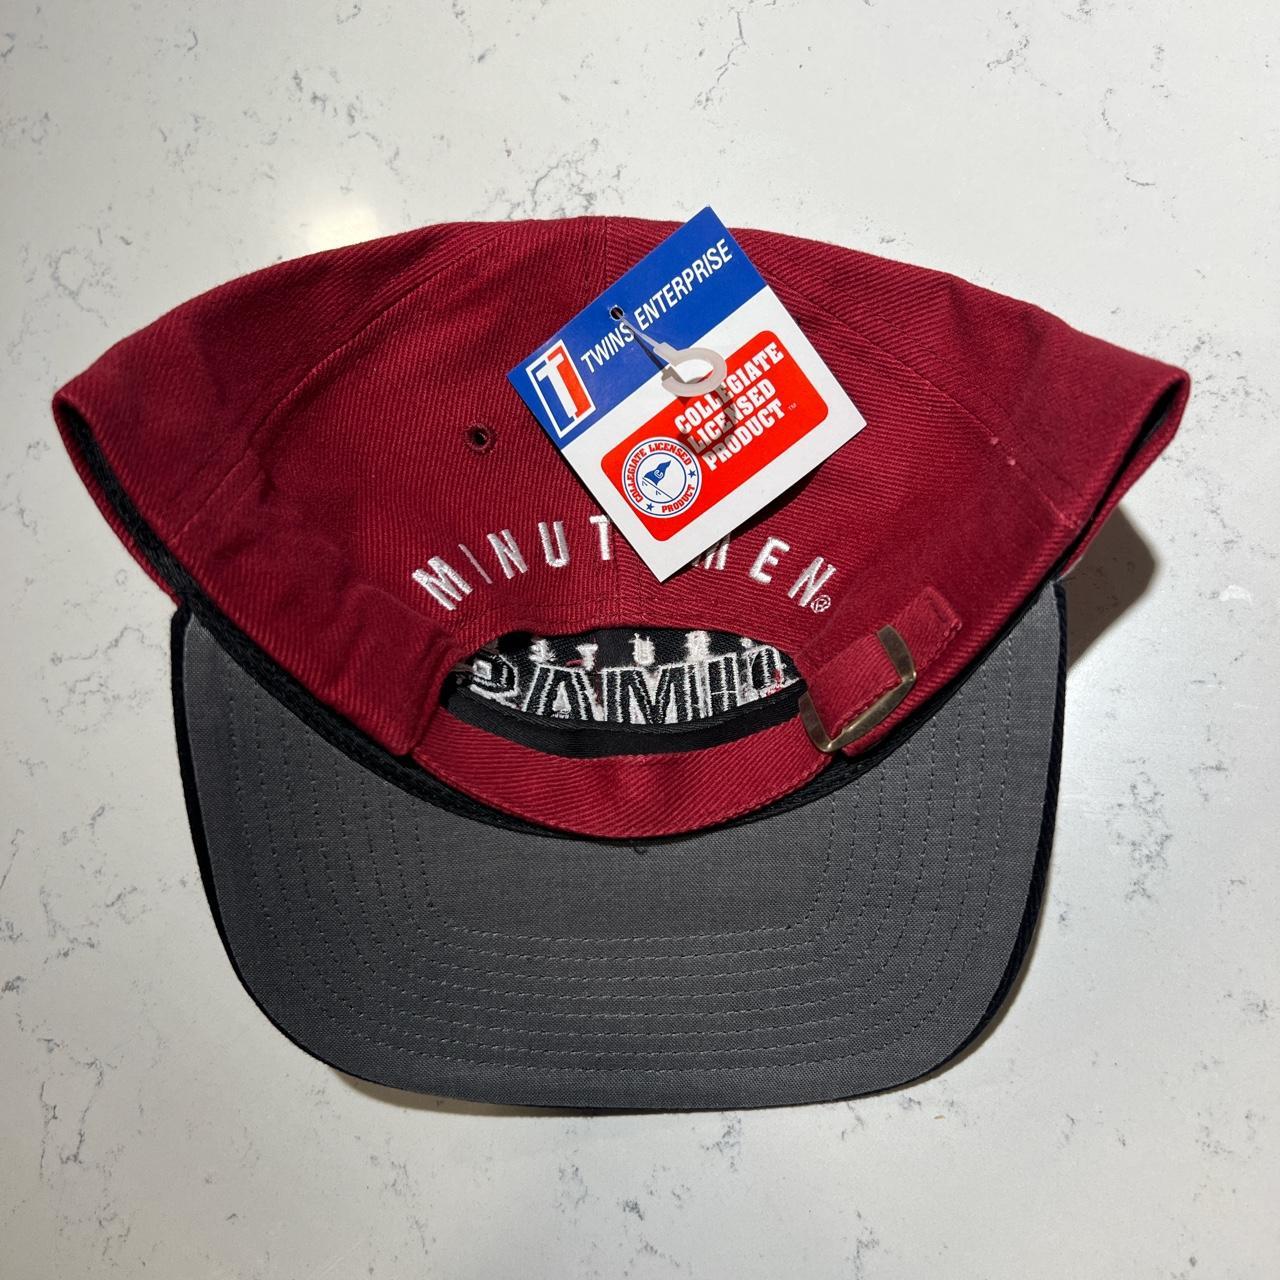 UMass Minutemen Burgundy & Black Twins Enterprise Vintage Strapback Adjustable Cap/Hat